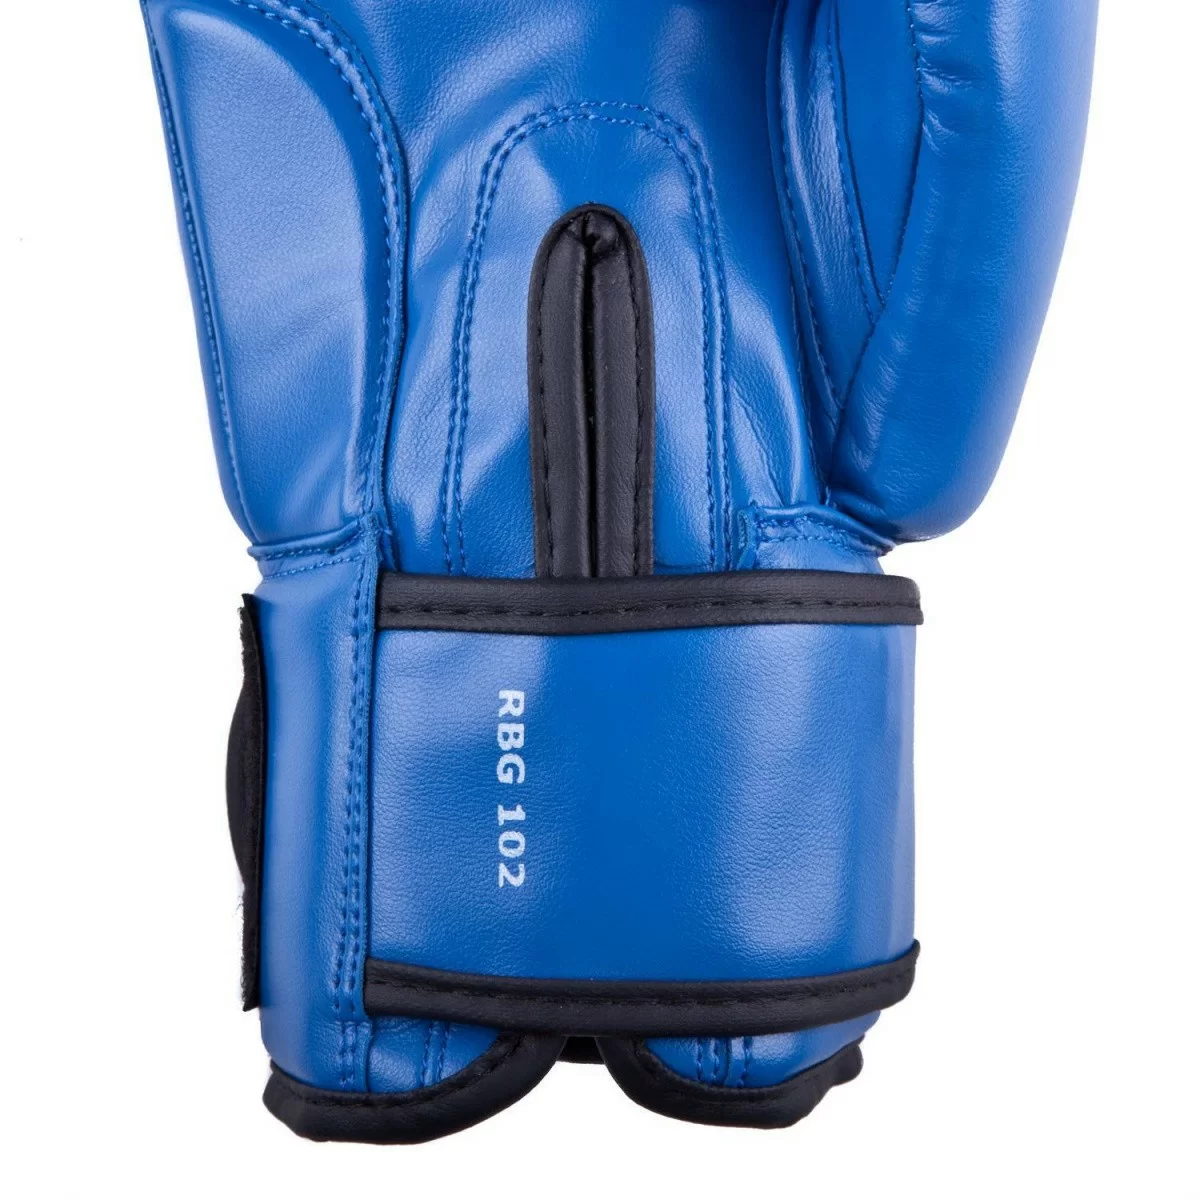 Реальное фото Перчатки боксерские Roomaif RBG-100 Кожа синие от магазина СпортСЕ